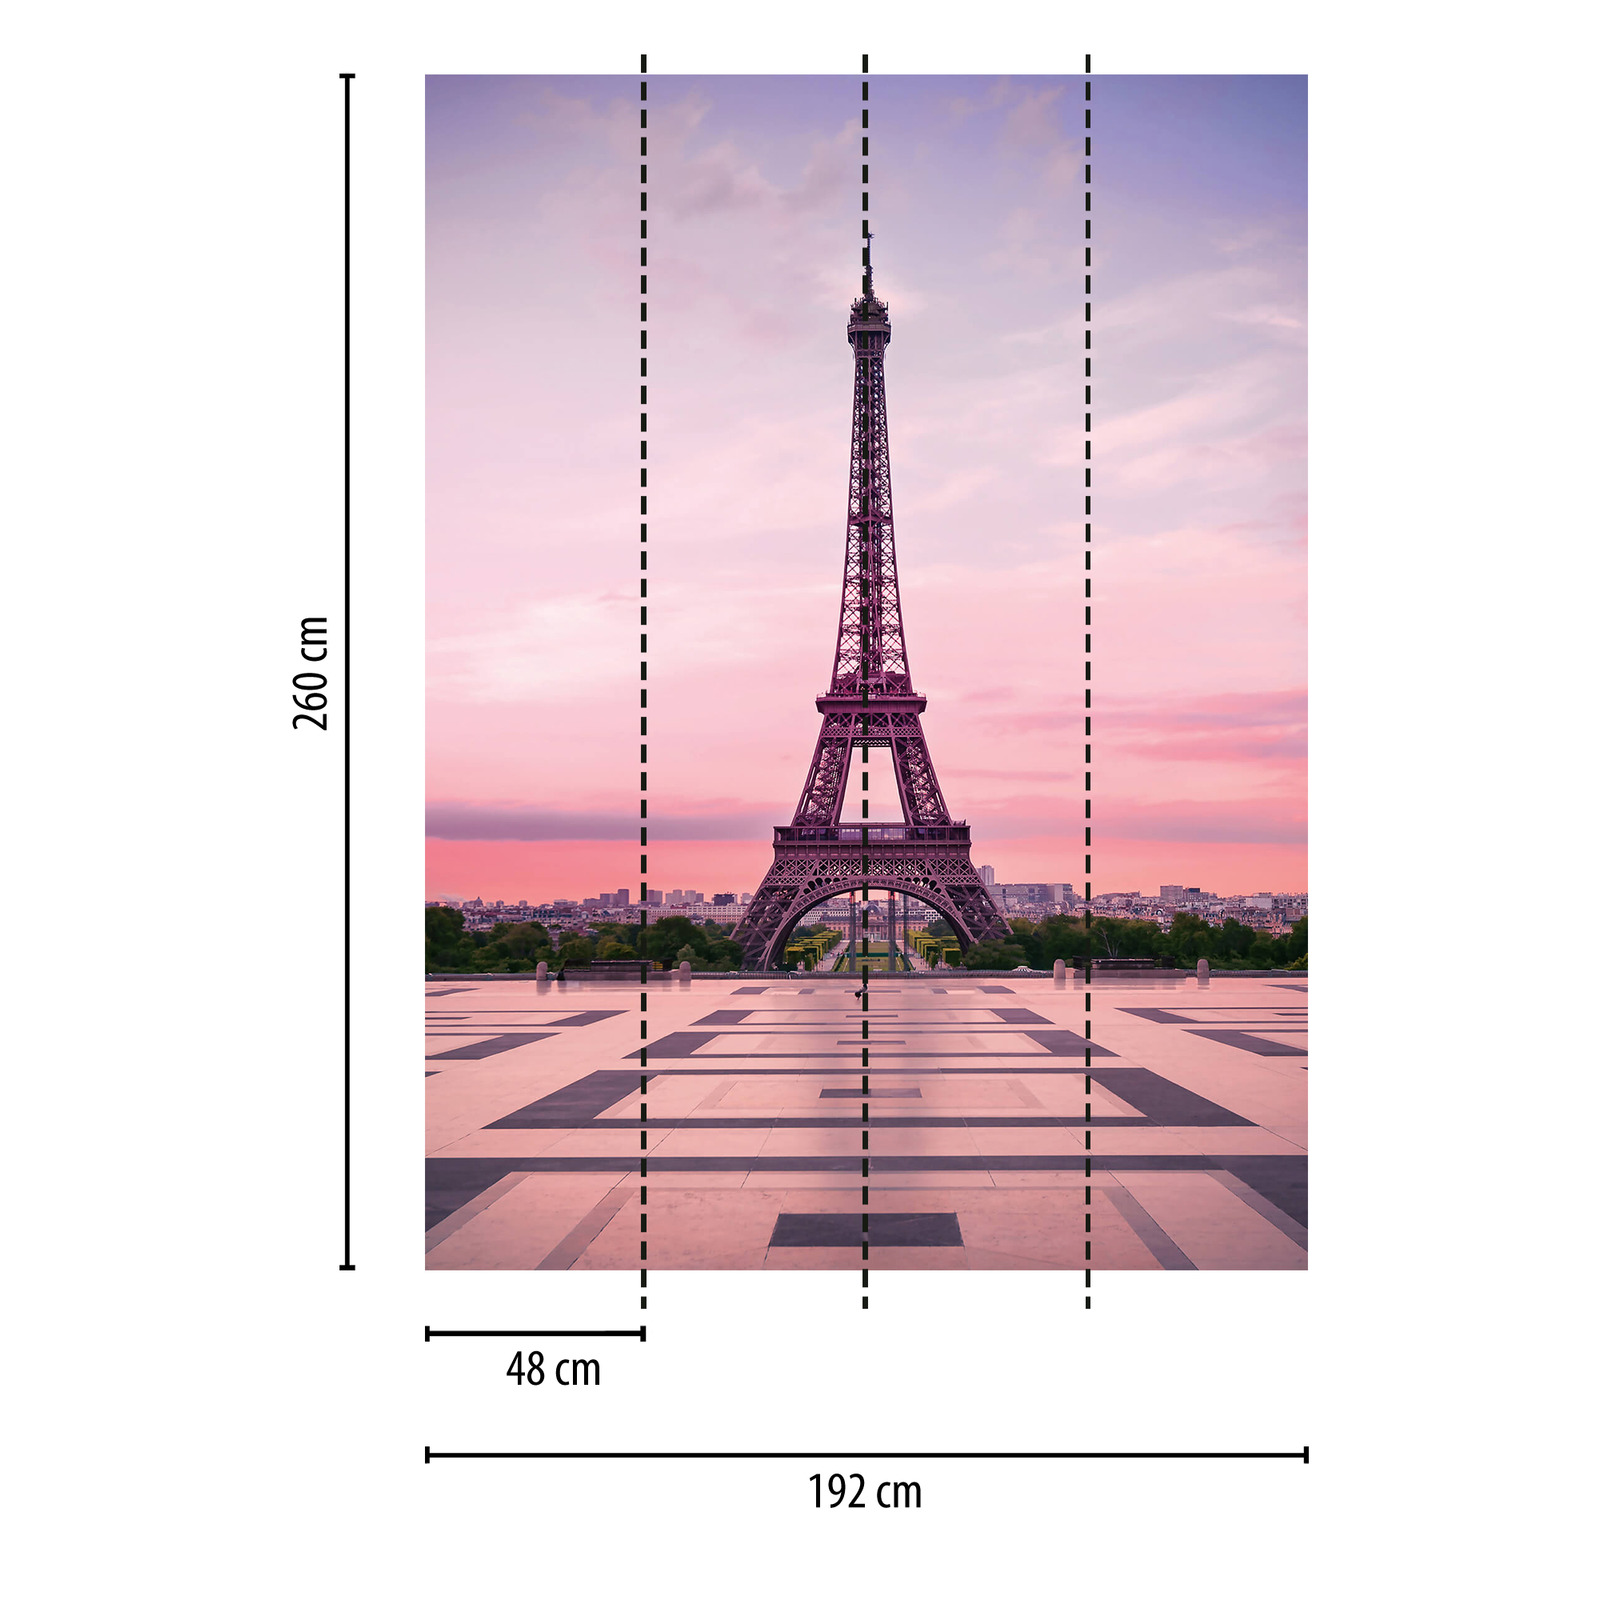             Eiffeltoren Behang Parijs bij zonsondergang
        